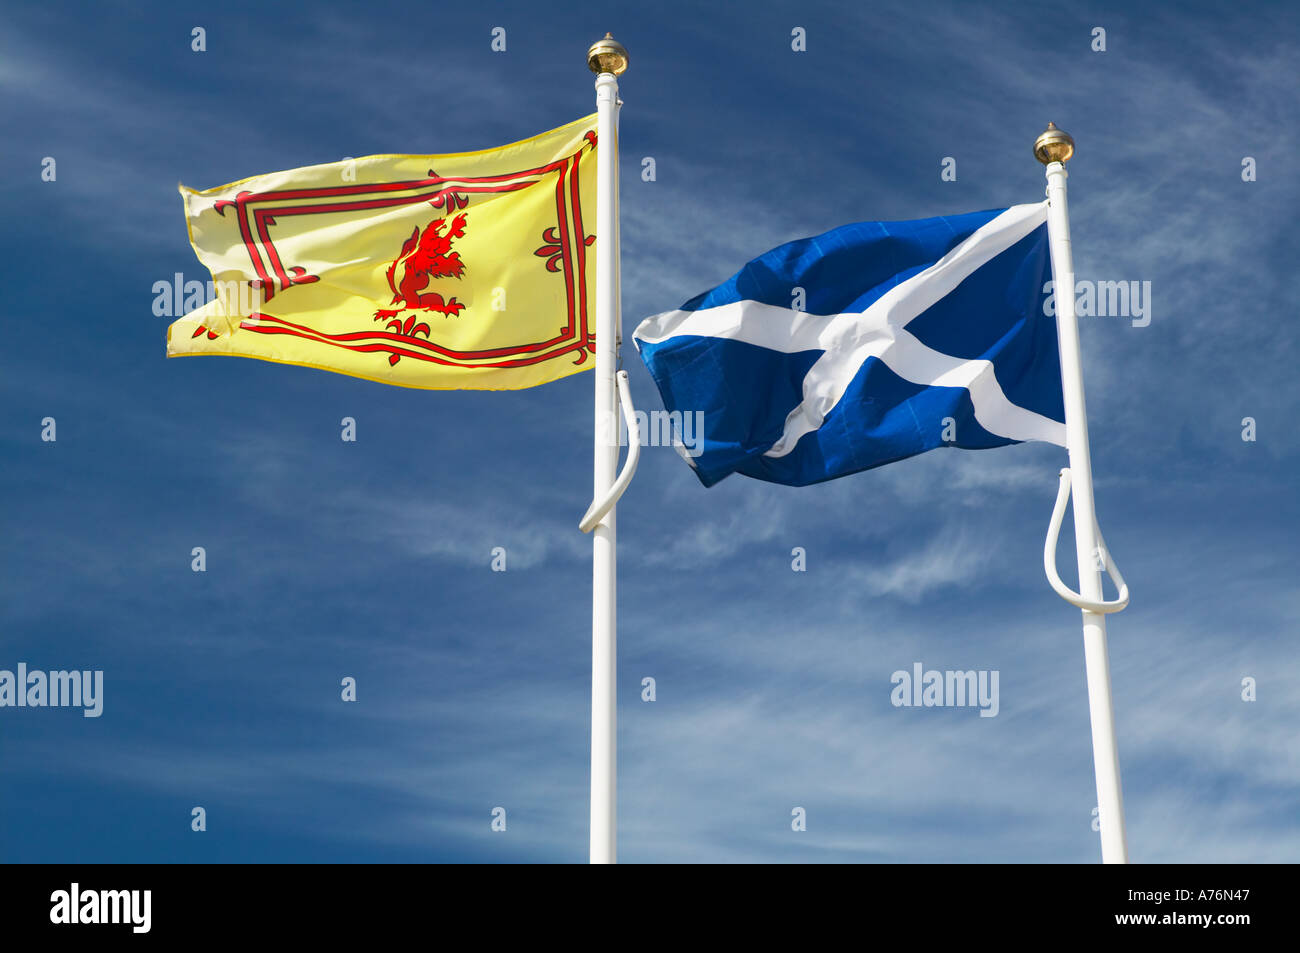 La Scozia. Il St Andrews cross bandiera, la bandiera nazionale della Scozia e la scozzese Royal banner con il leone rosso rampante Foto Stock